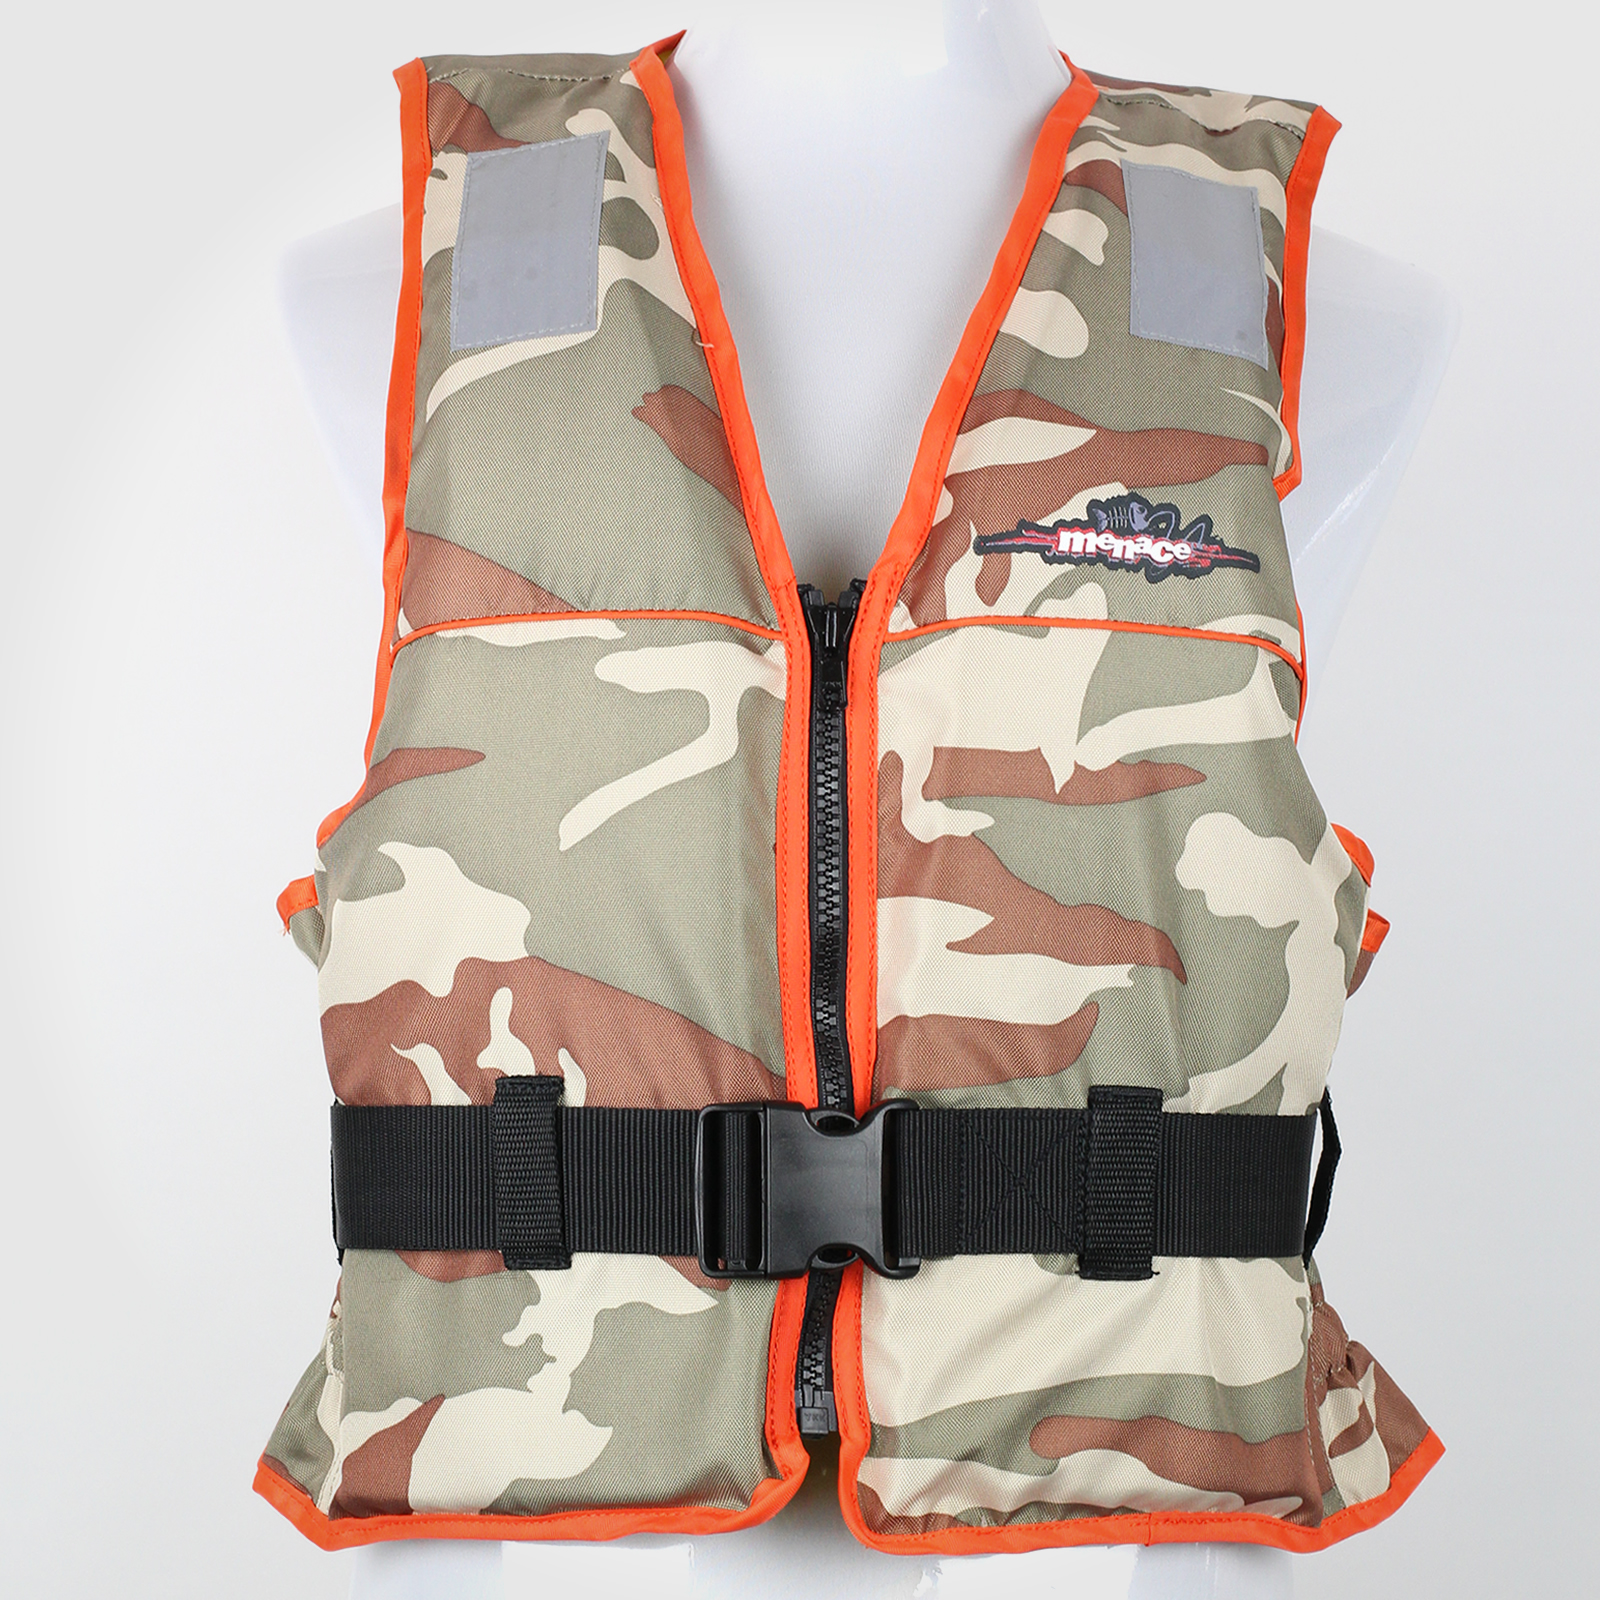 ADULT LARGE Life Jacket PFD3 Water Jet Ski Kayak Lifejacket Type 3 ...